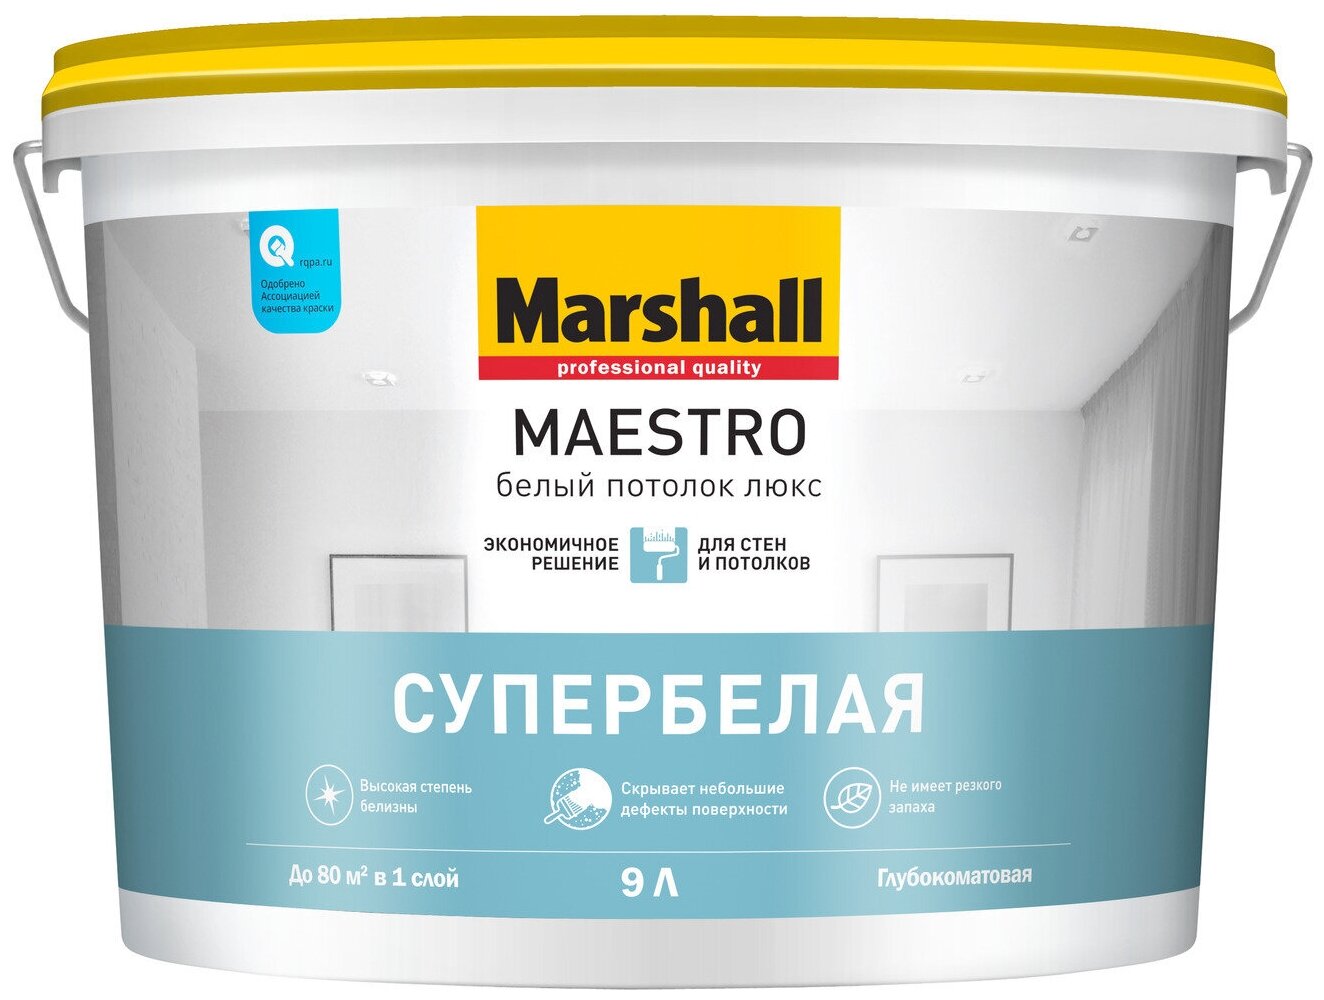 MARSHALL MAESTRO белый потолок люкс краска водно-дисперсионная для потолков, глубокоматовая (9л)